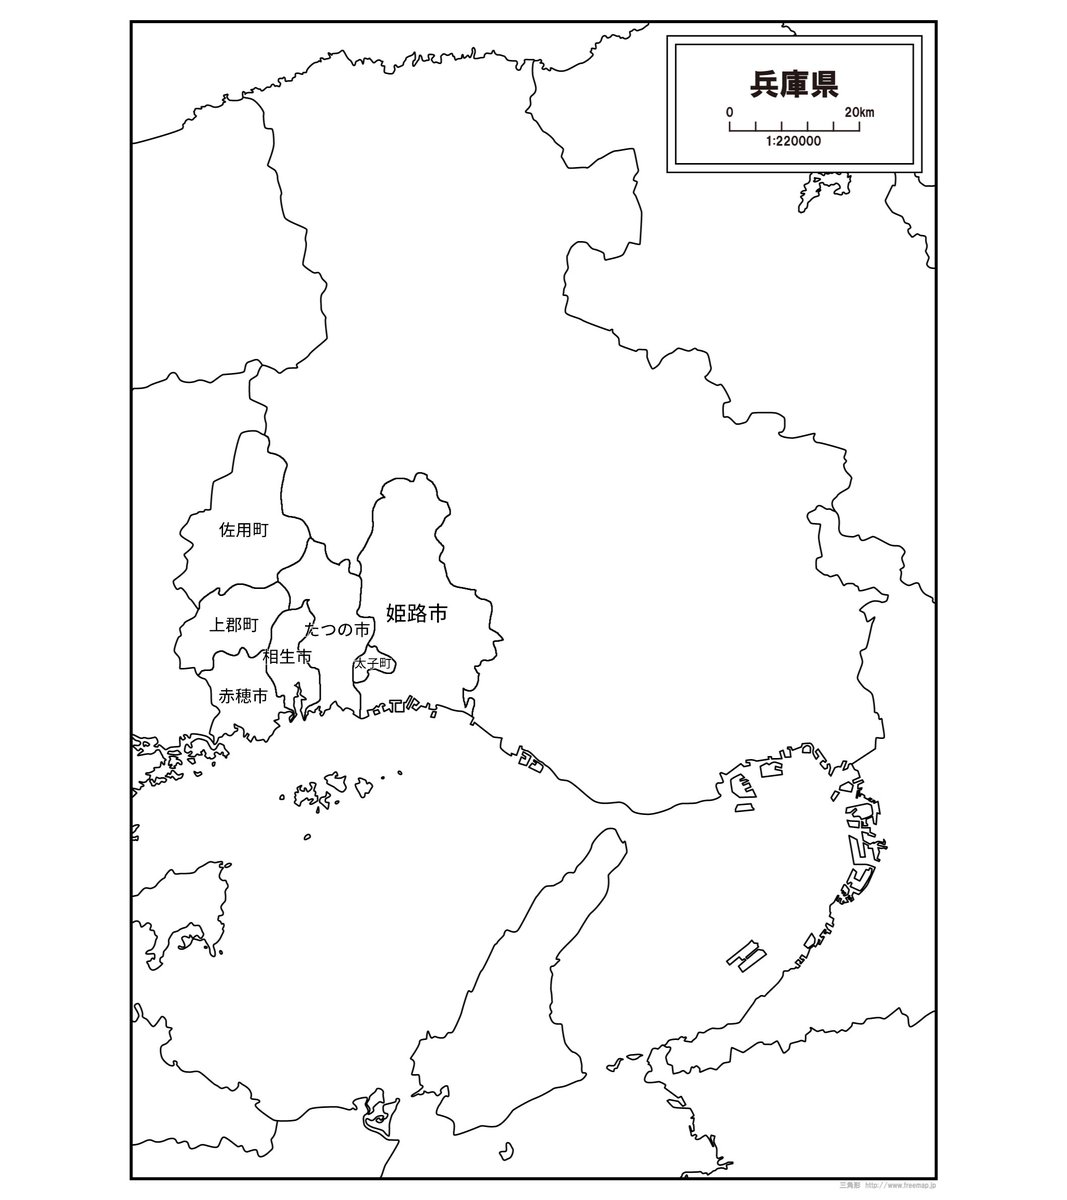 偽姫路市は姫路市以西の5市町を合体させたものでした！
意外と似てるよね😂